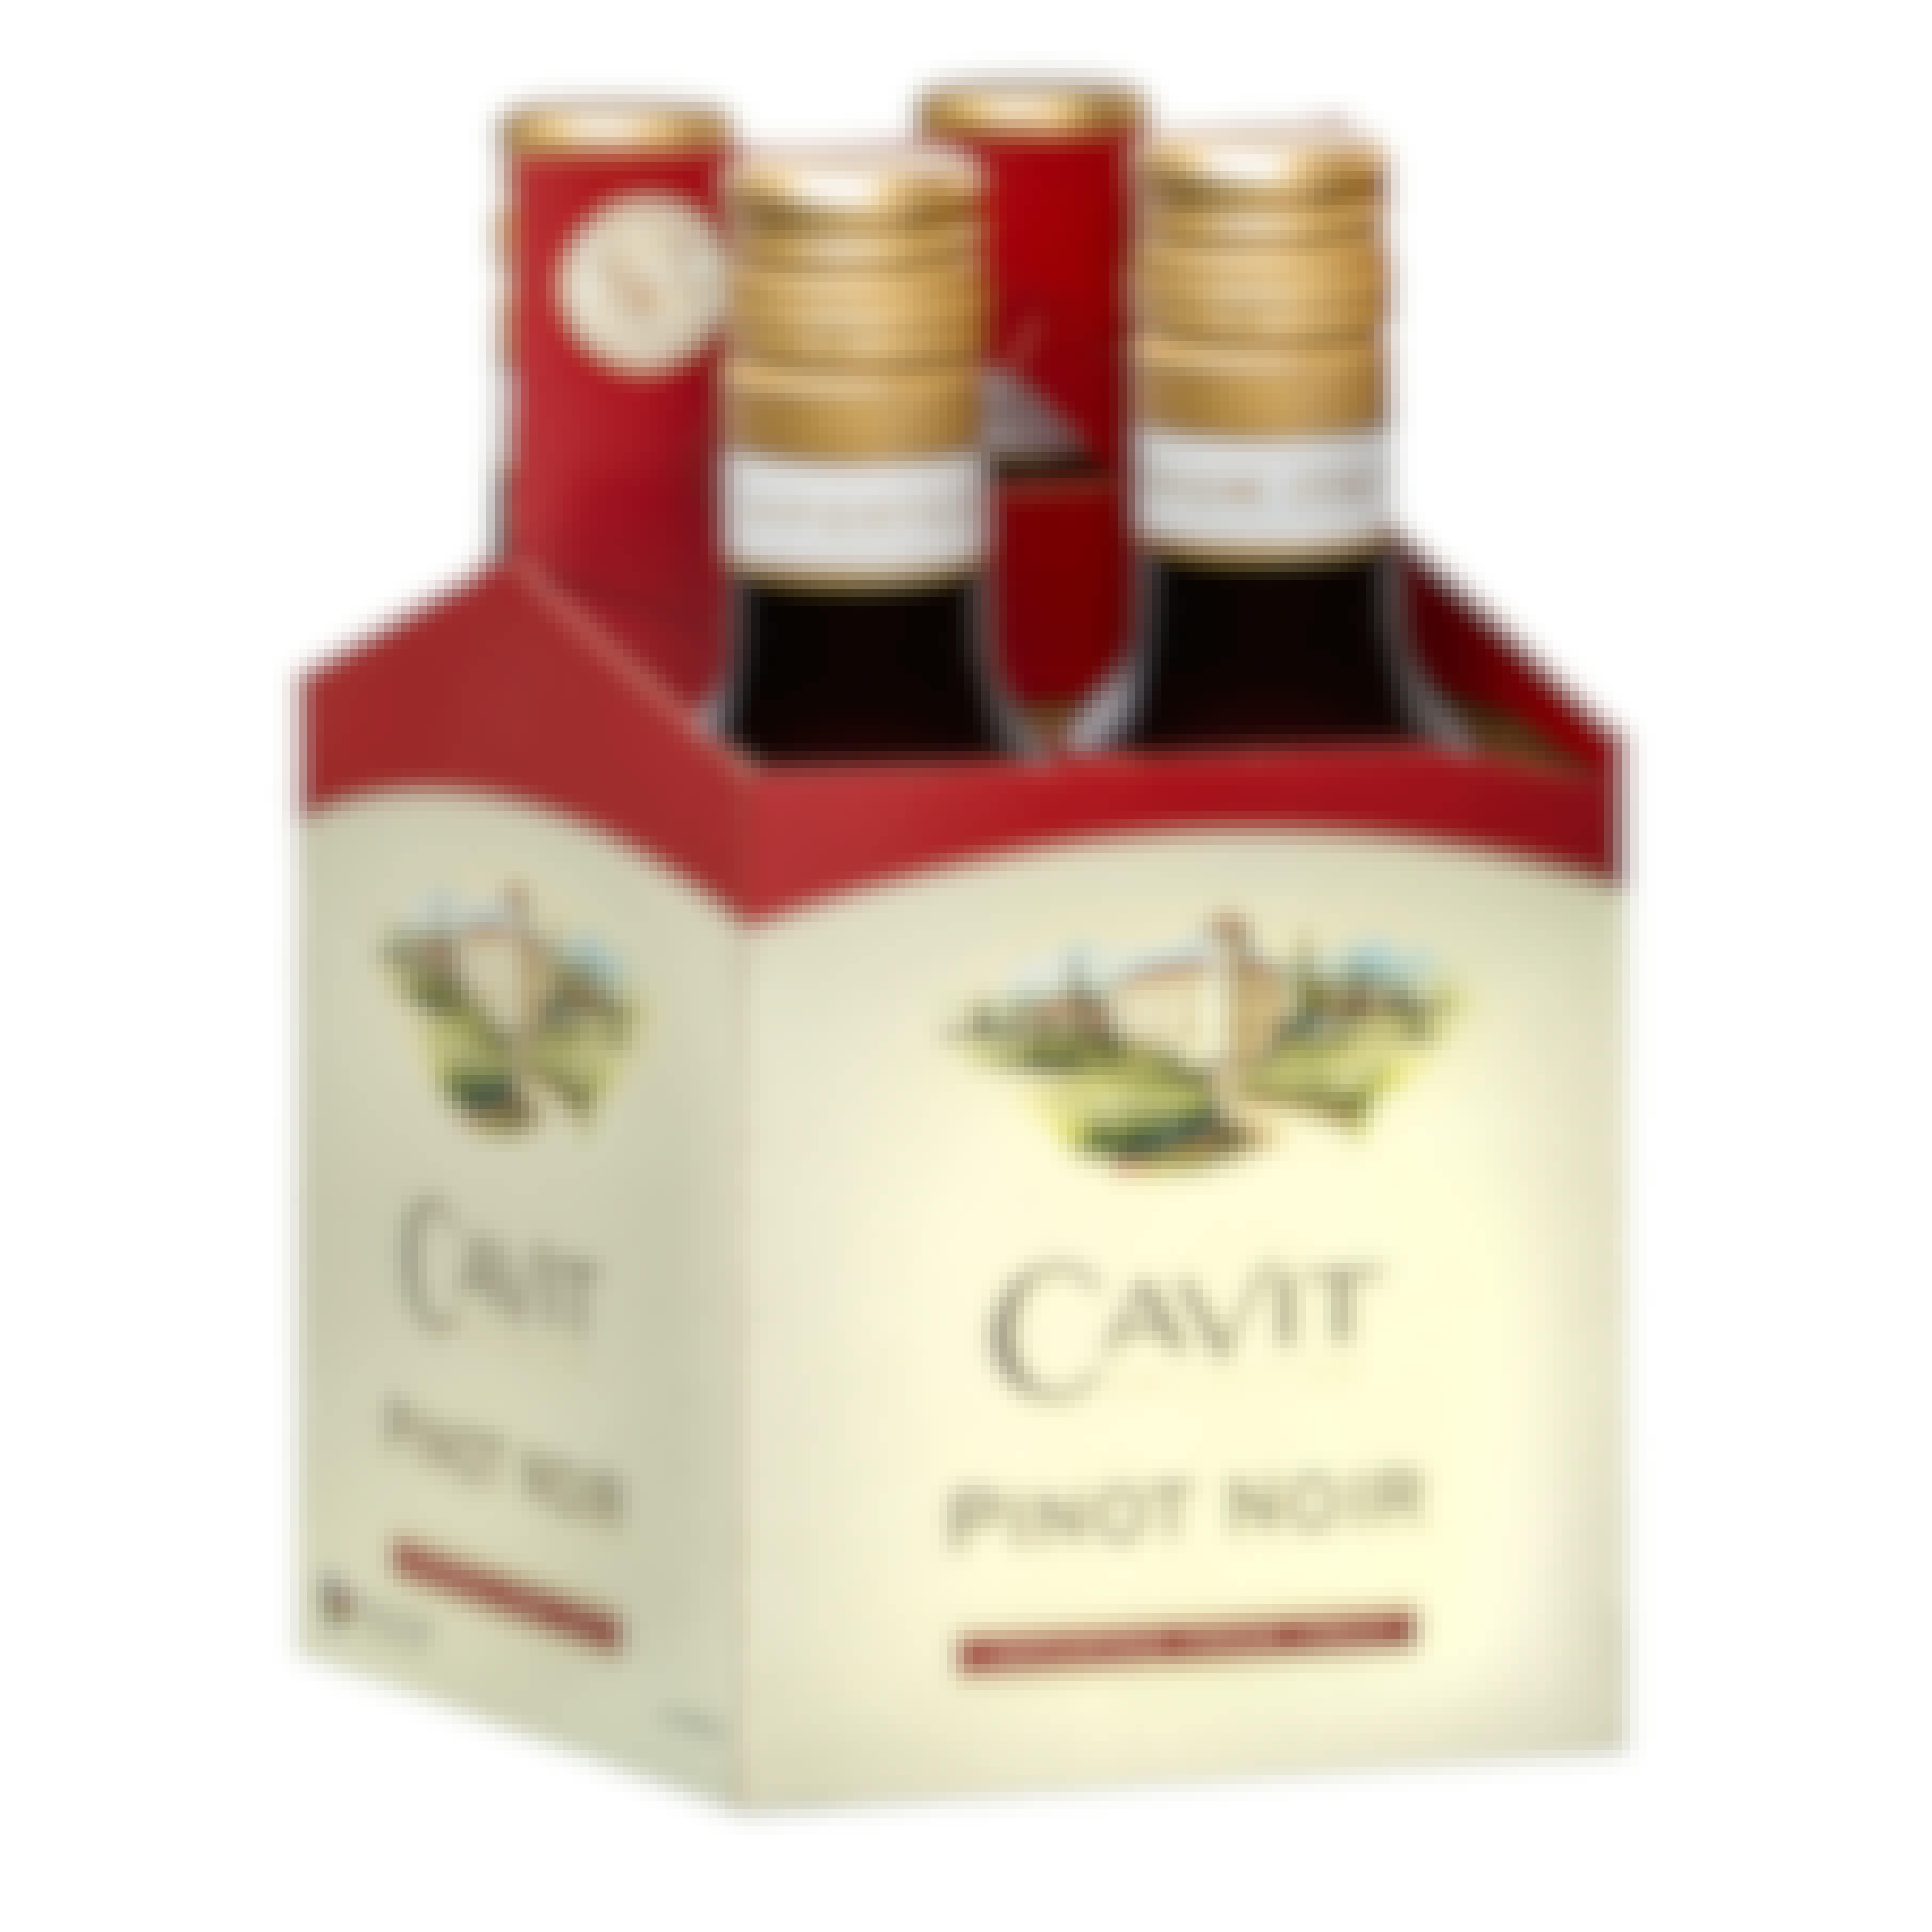 Cavit Pinot Noir 4 pack 187ml